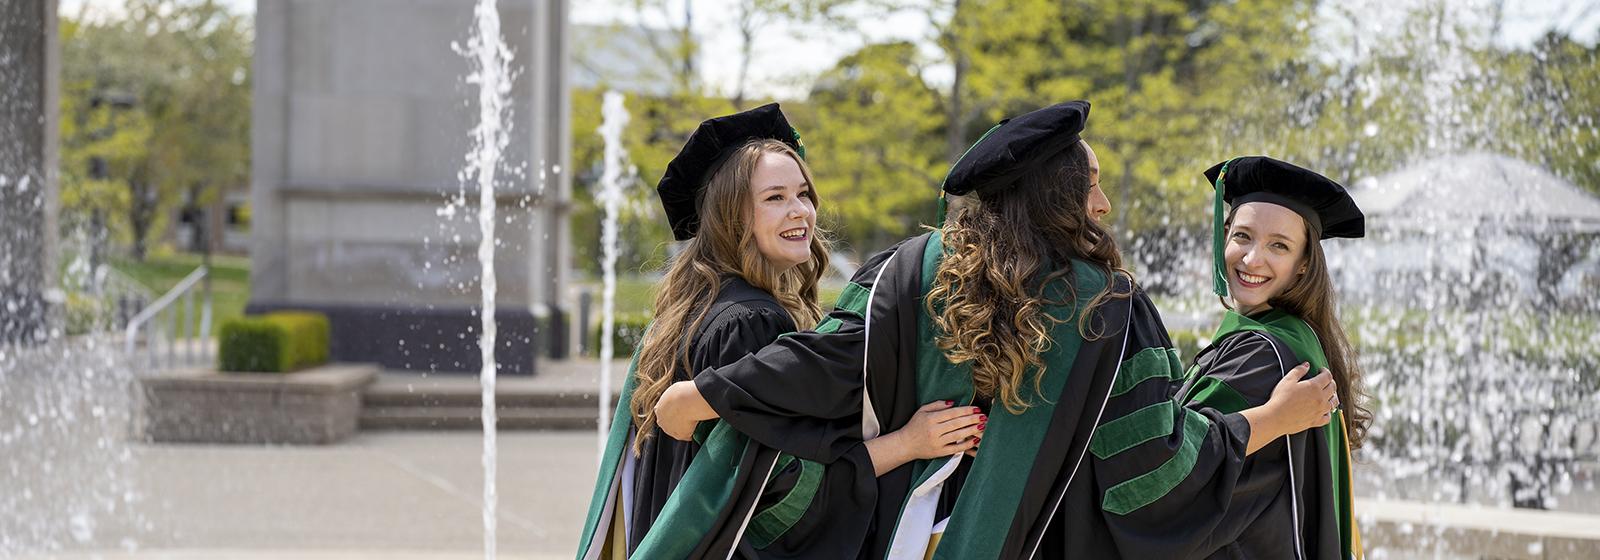 公开大学学生庆祝毕业的照片